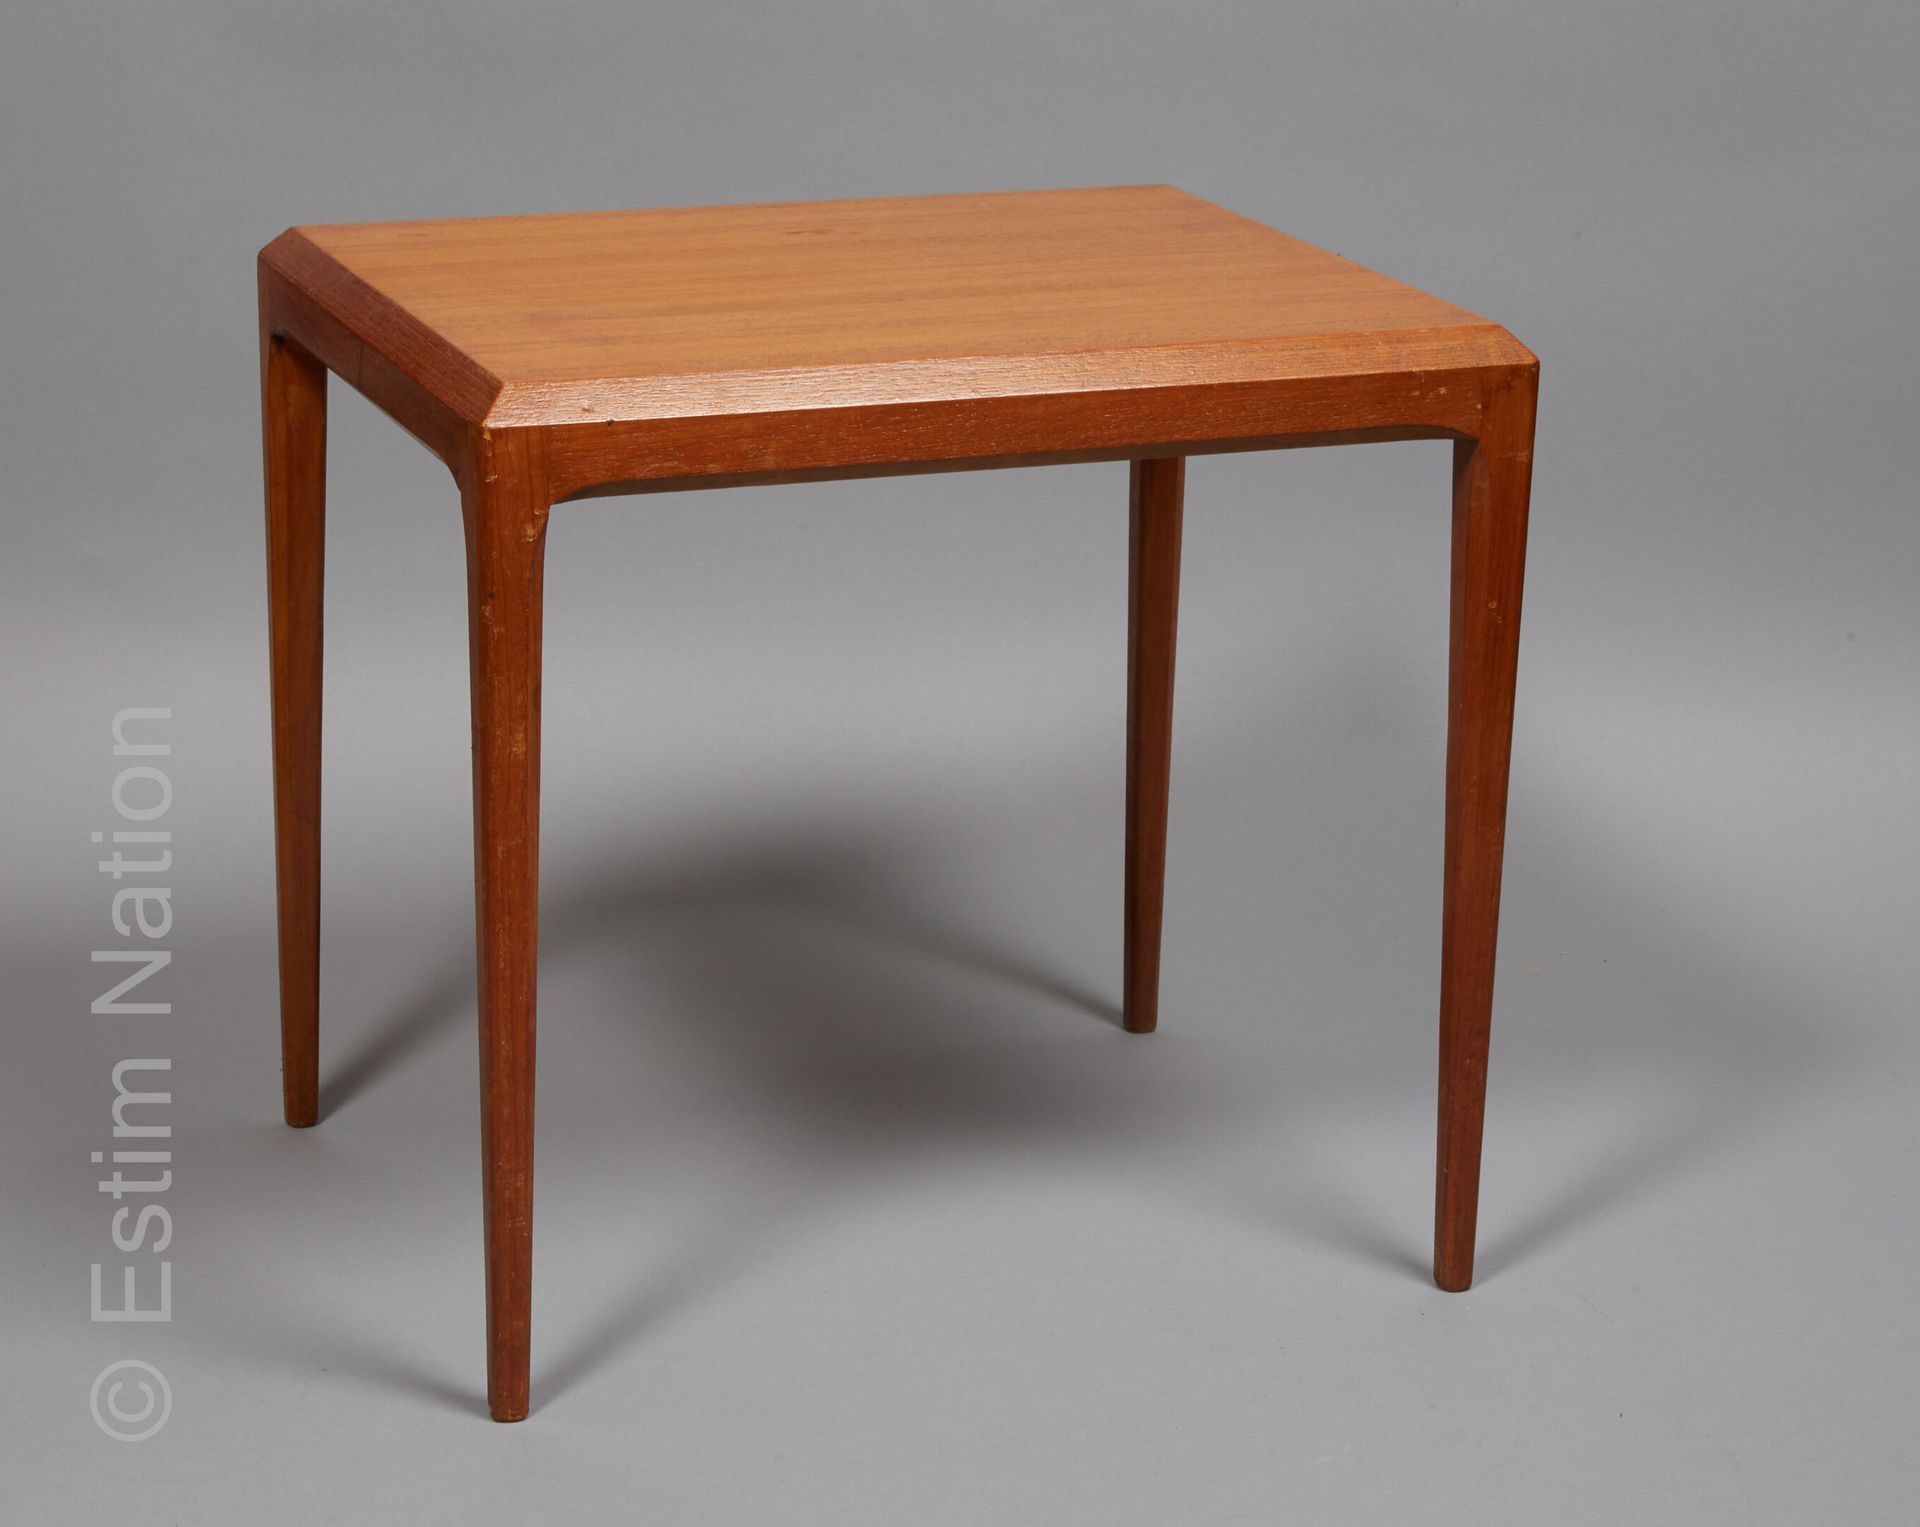 Design Scandinave 约翰内斯-安德森 (1903-1991)



长方形柚木沙发，四条锥形腿。

丹麦CFC SILKEBORG版，顶部下方有&hellip;